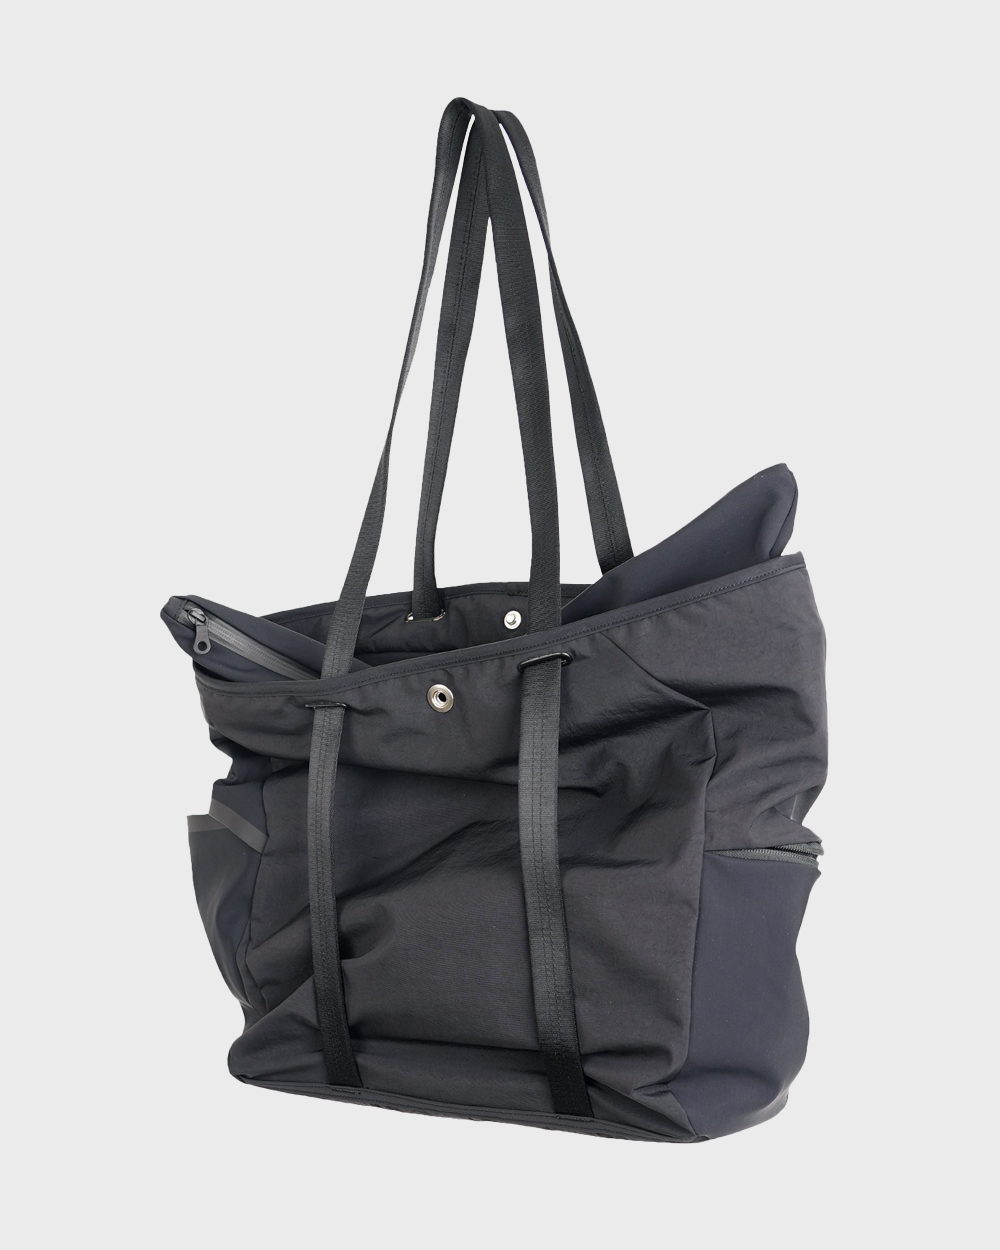 VL Tote Bag (Black)